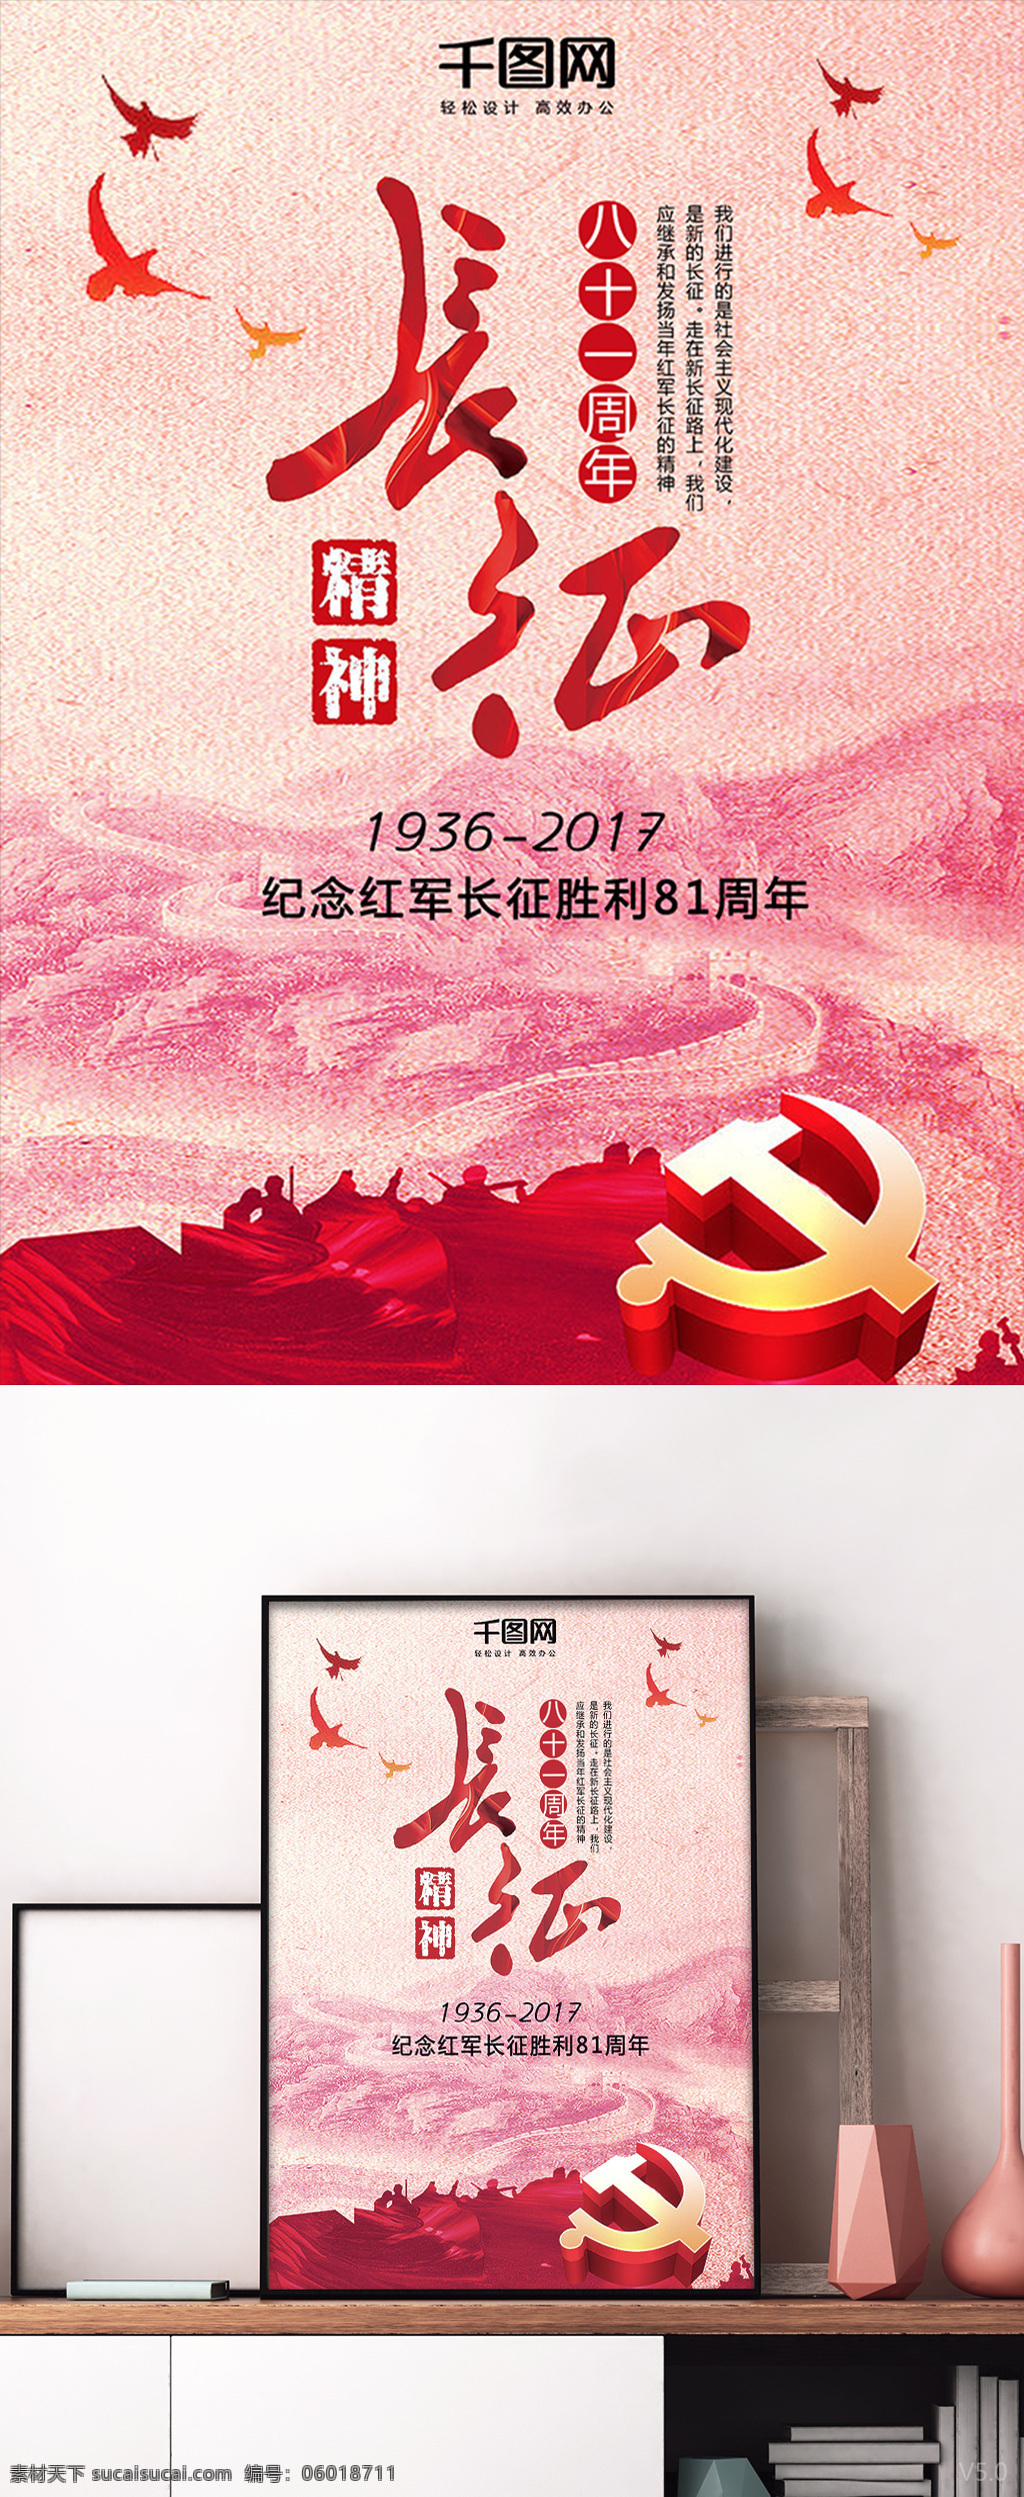 纪念 红军 长征 胜利 八 十 周年 精神 海报 红军长征 八十一周年 长征精神